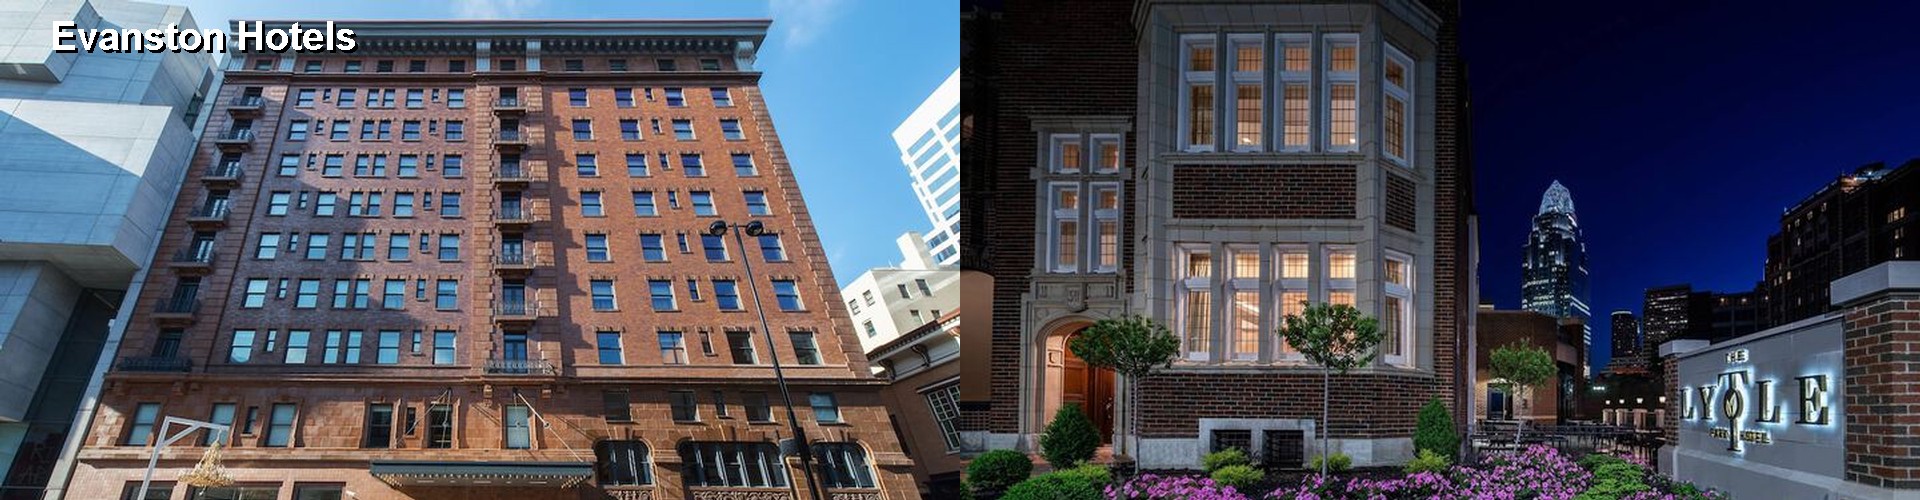 4 Best Hotels near Evanston